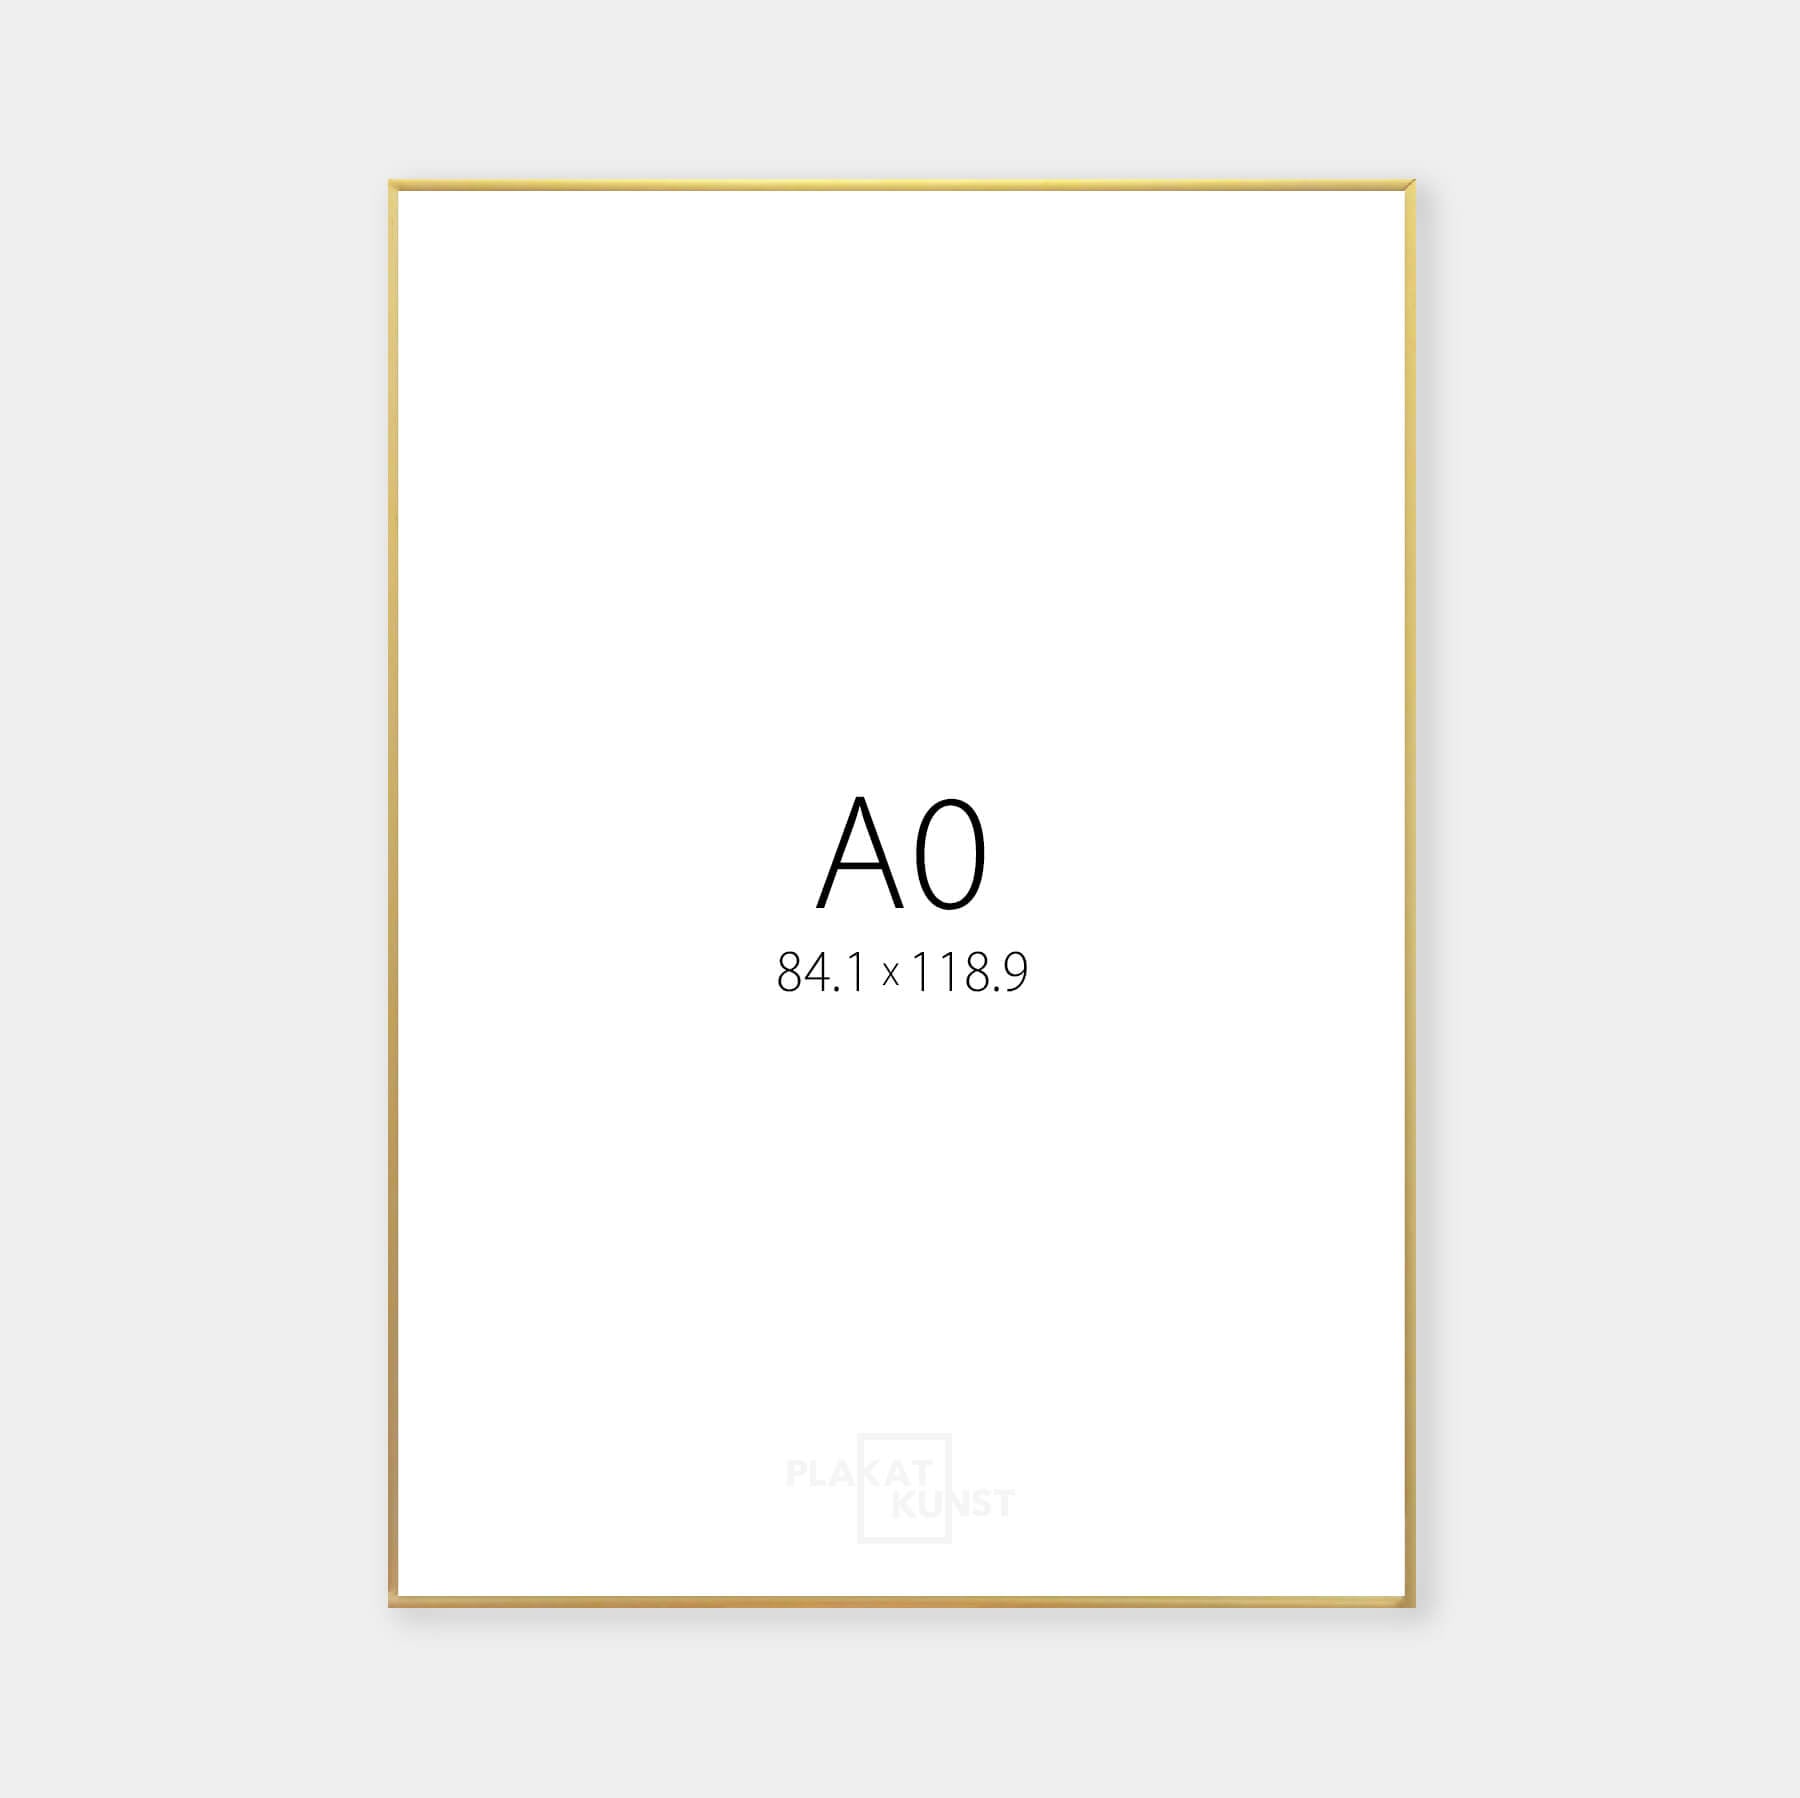 A0 golden aluminum frame - Narrow (9 mm) - 84.1x118.9 cm